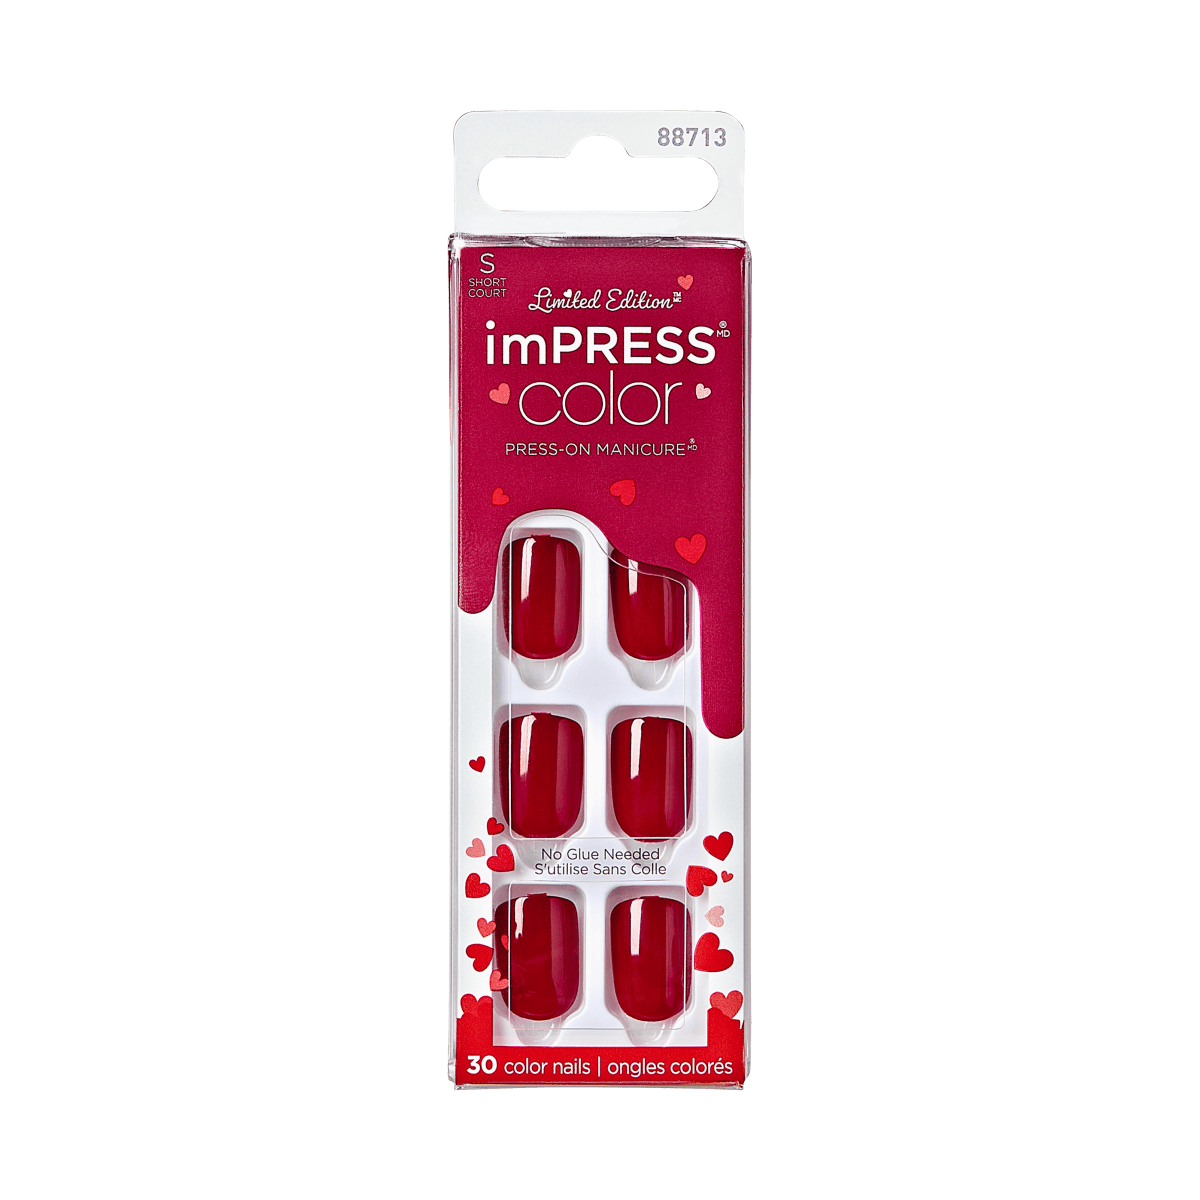 imPRESS Color Press-On Manicure Valentine Nails - Stuck Together